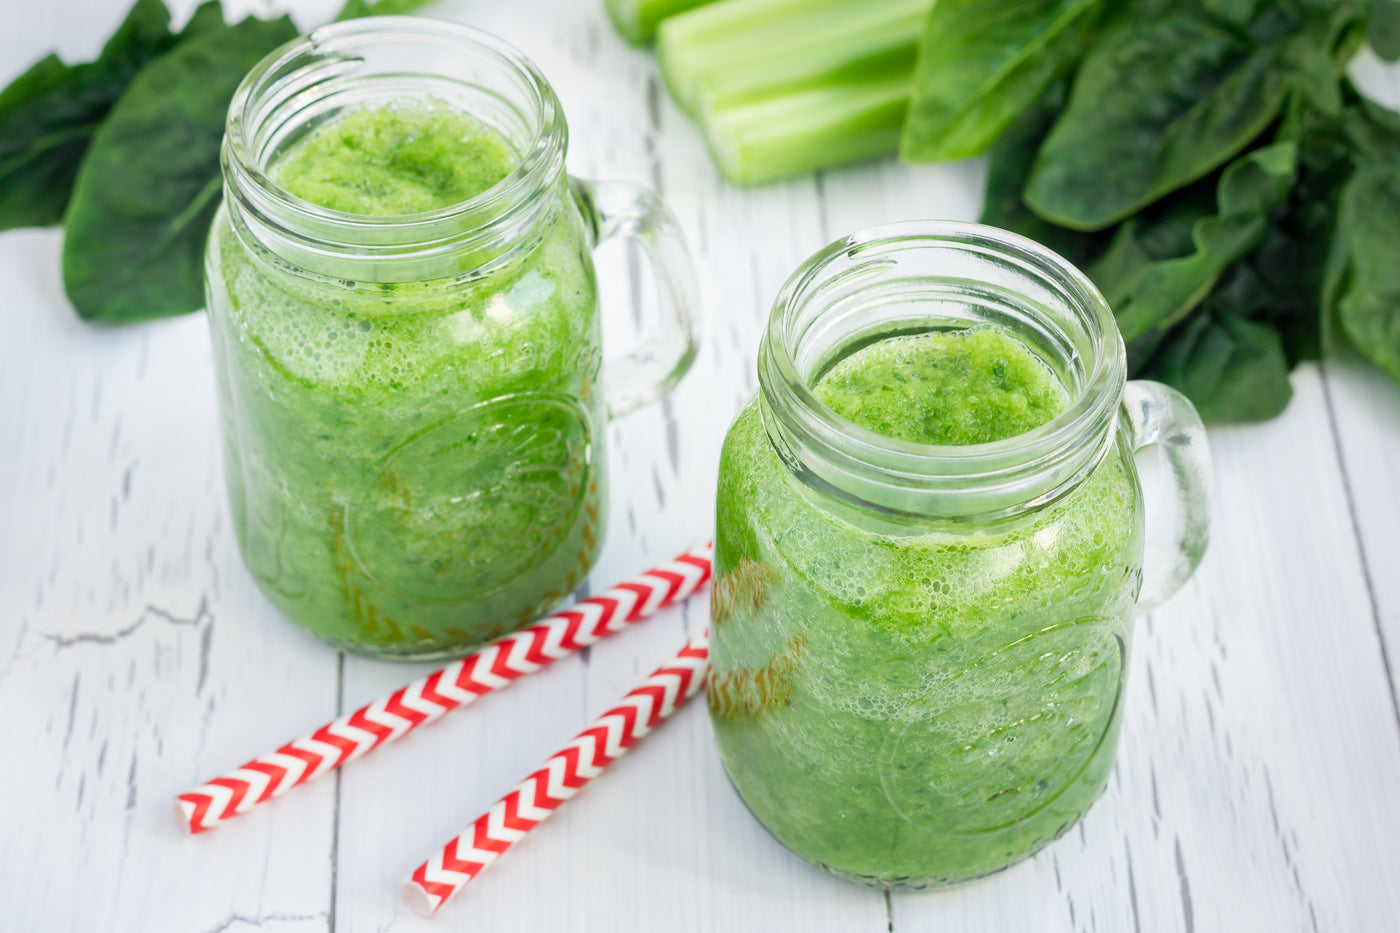 H302 Health Benefits of Celery Juice